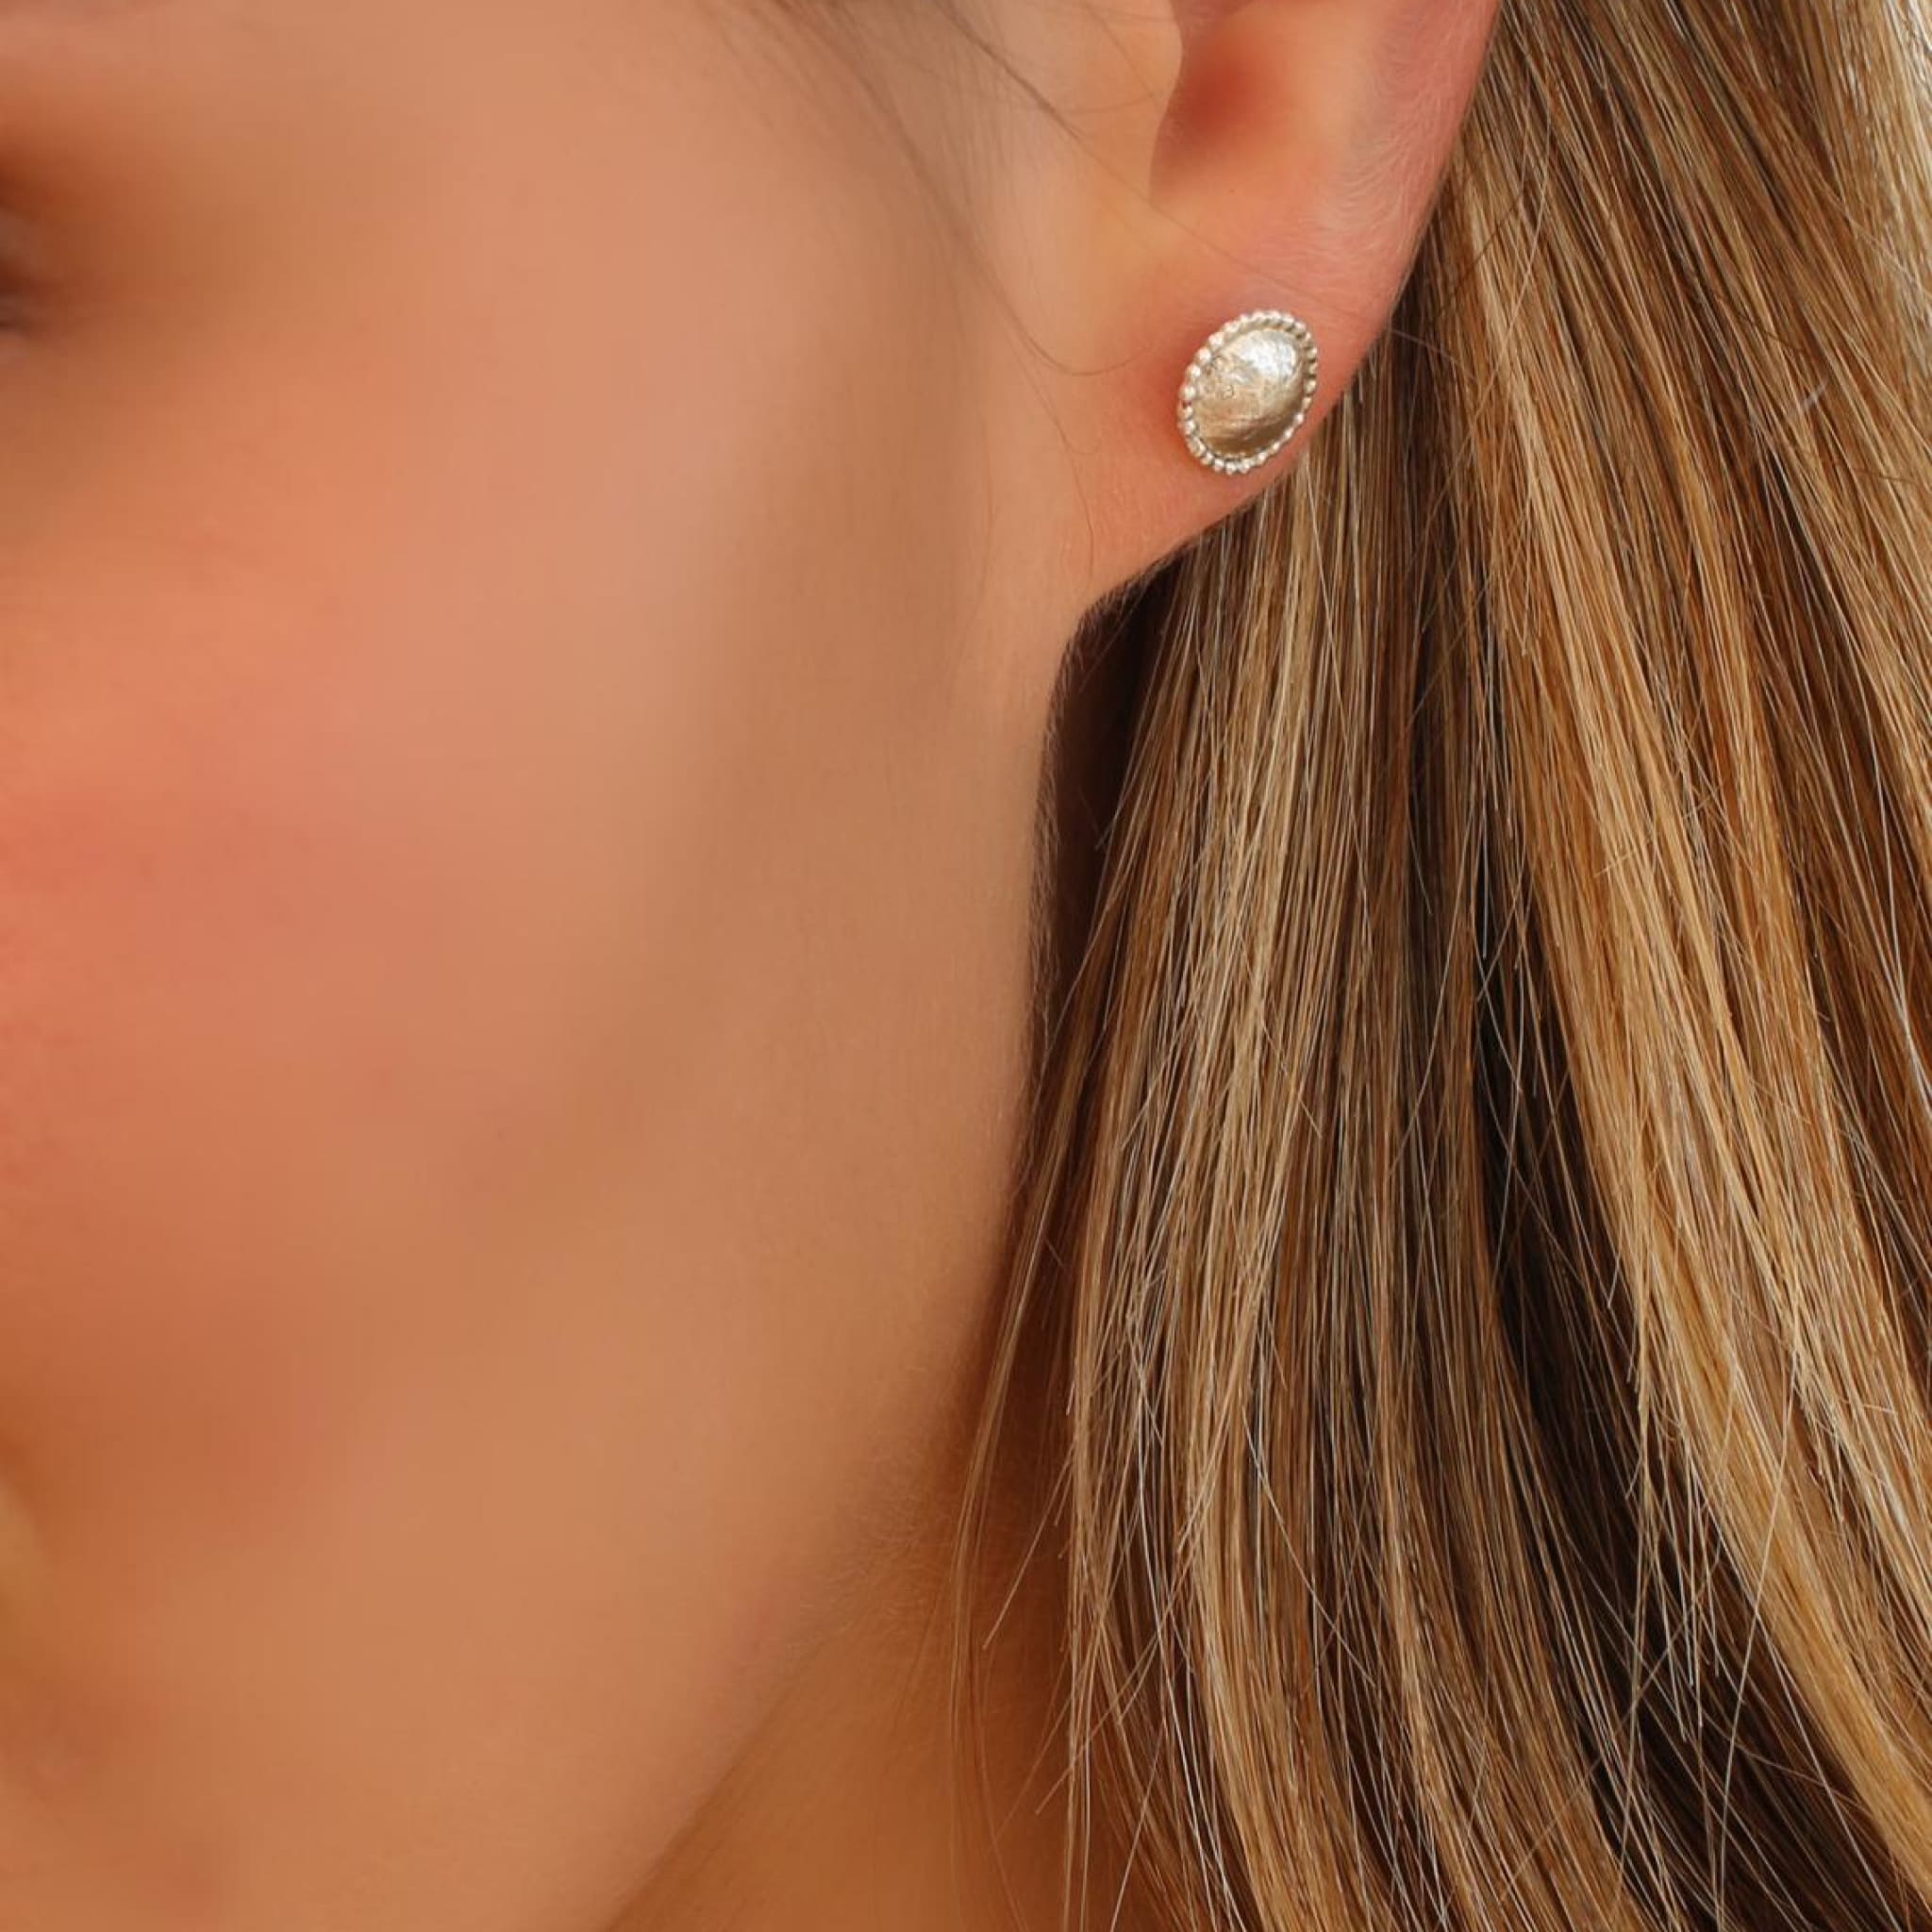 Buy 2 Ct Bezel Set Stud Push Back Earrings : Best Deals